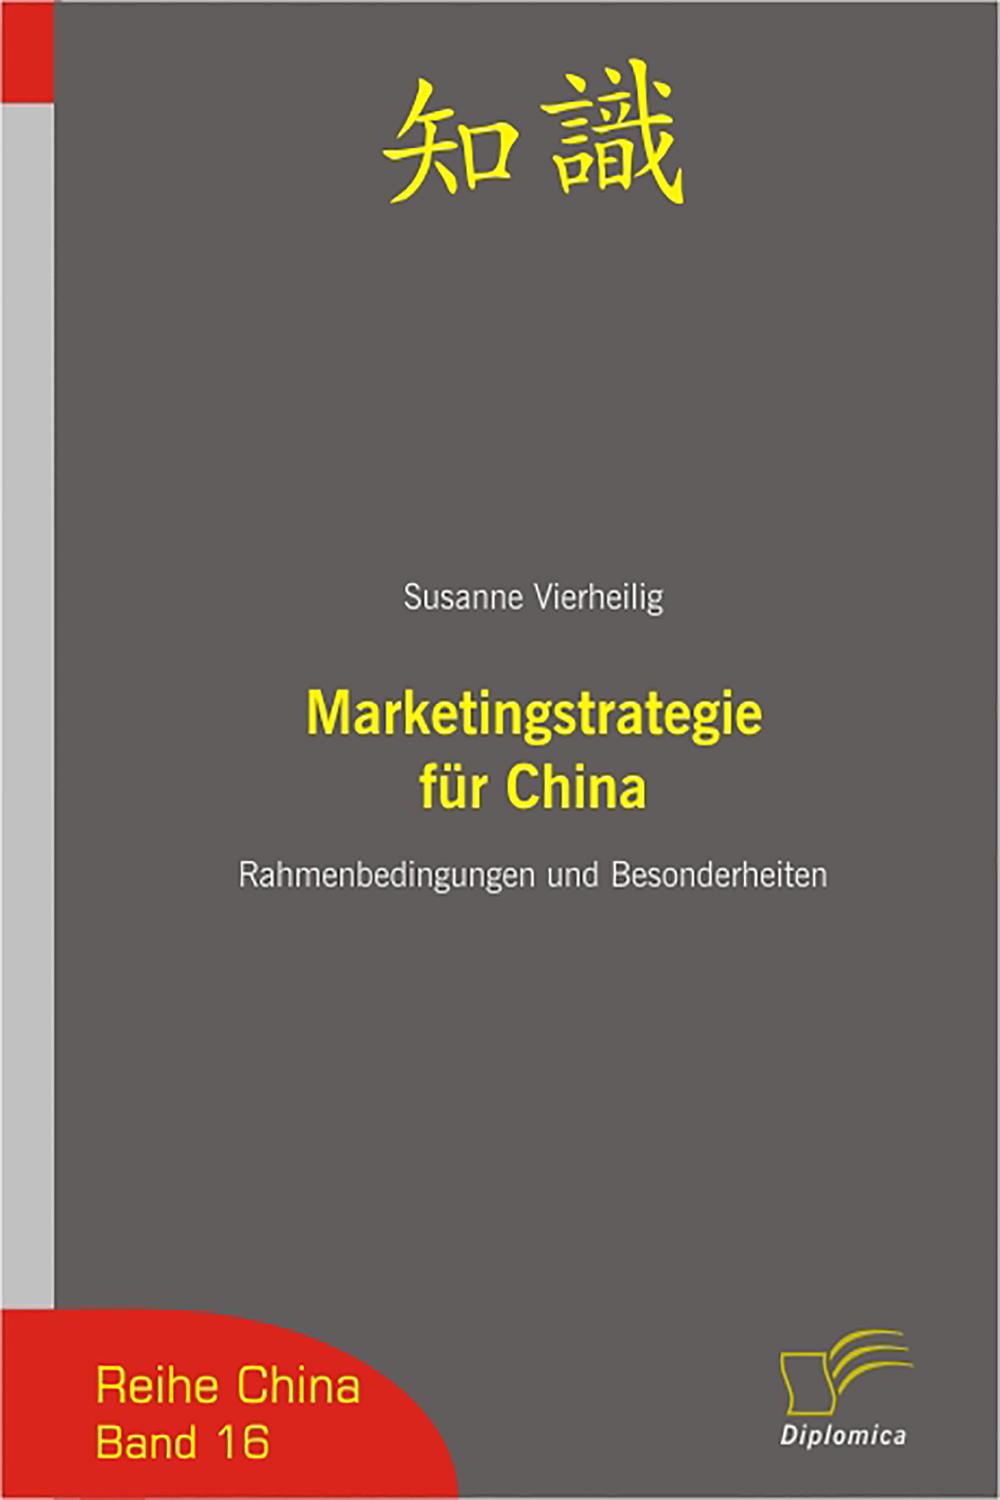 Marketingstrategie für China - Susanne Vierheilig